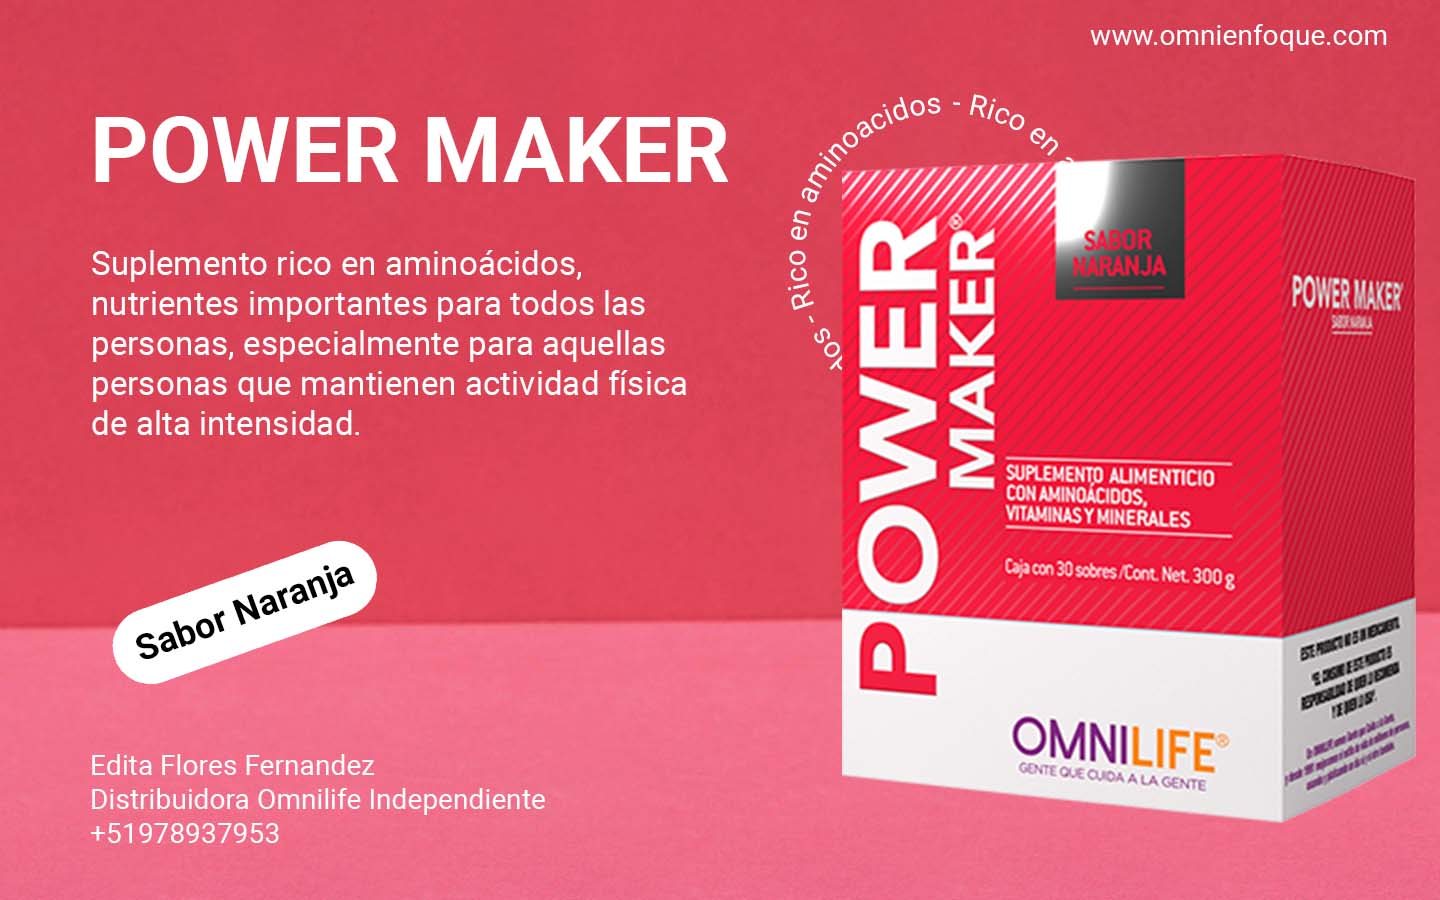 Power Maker de Omnilife es un producto rico en aminoacidos importante para los musculos